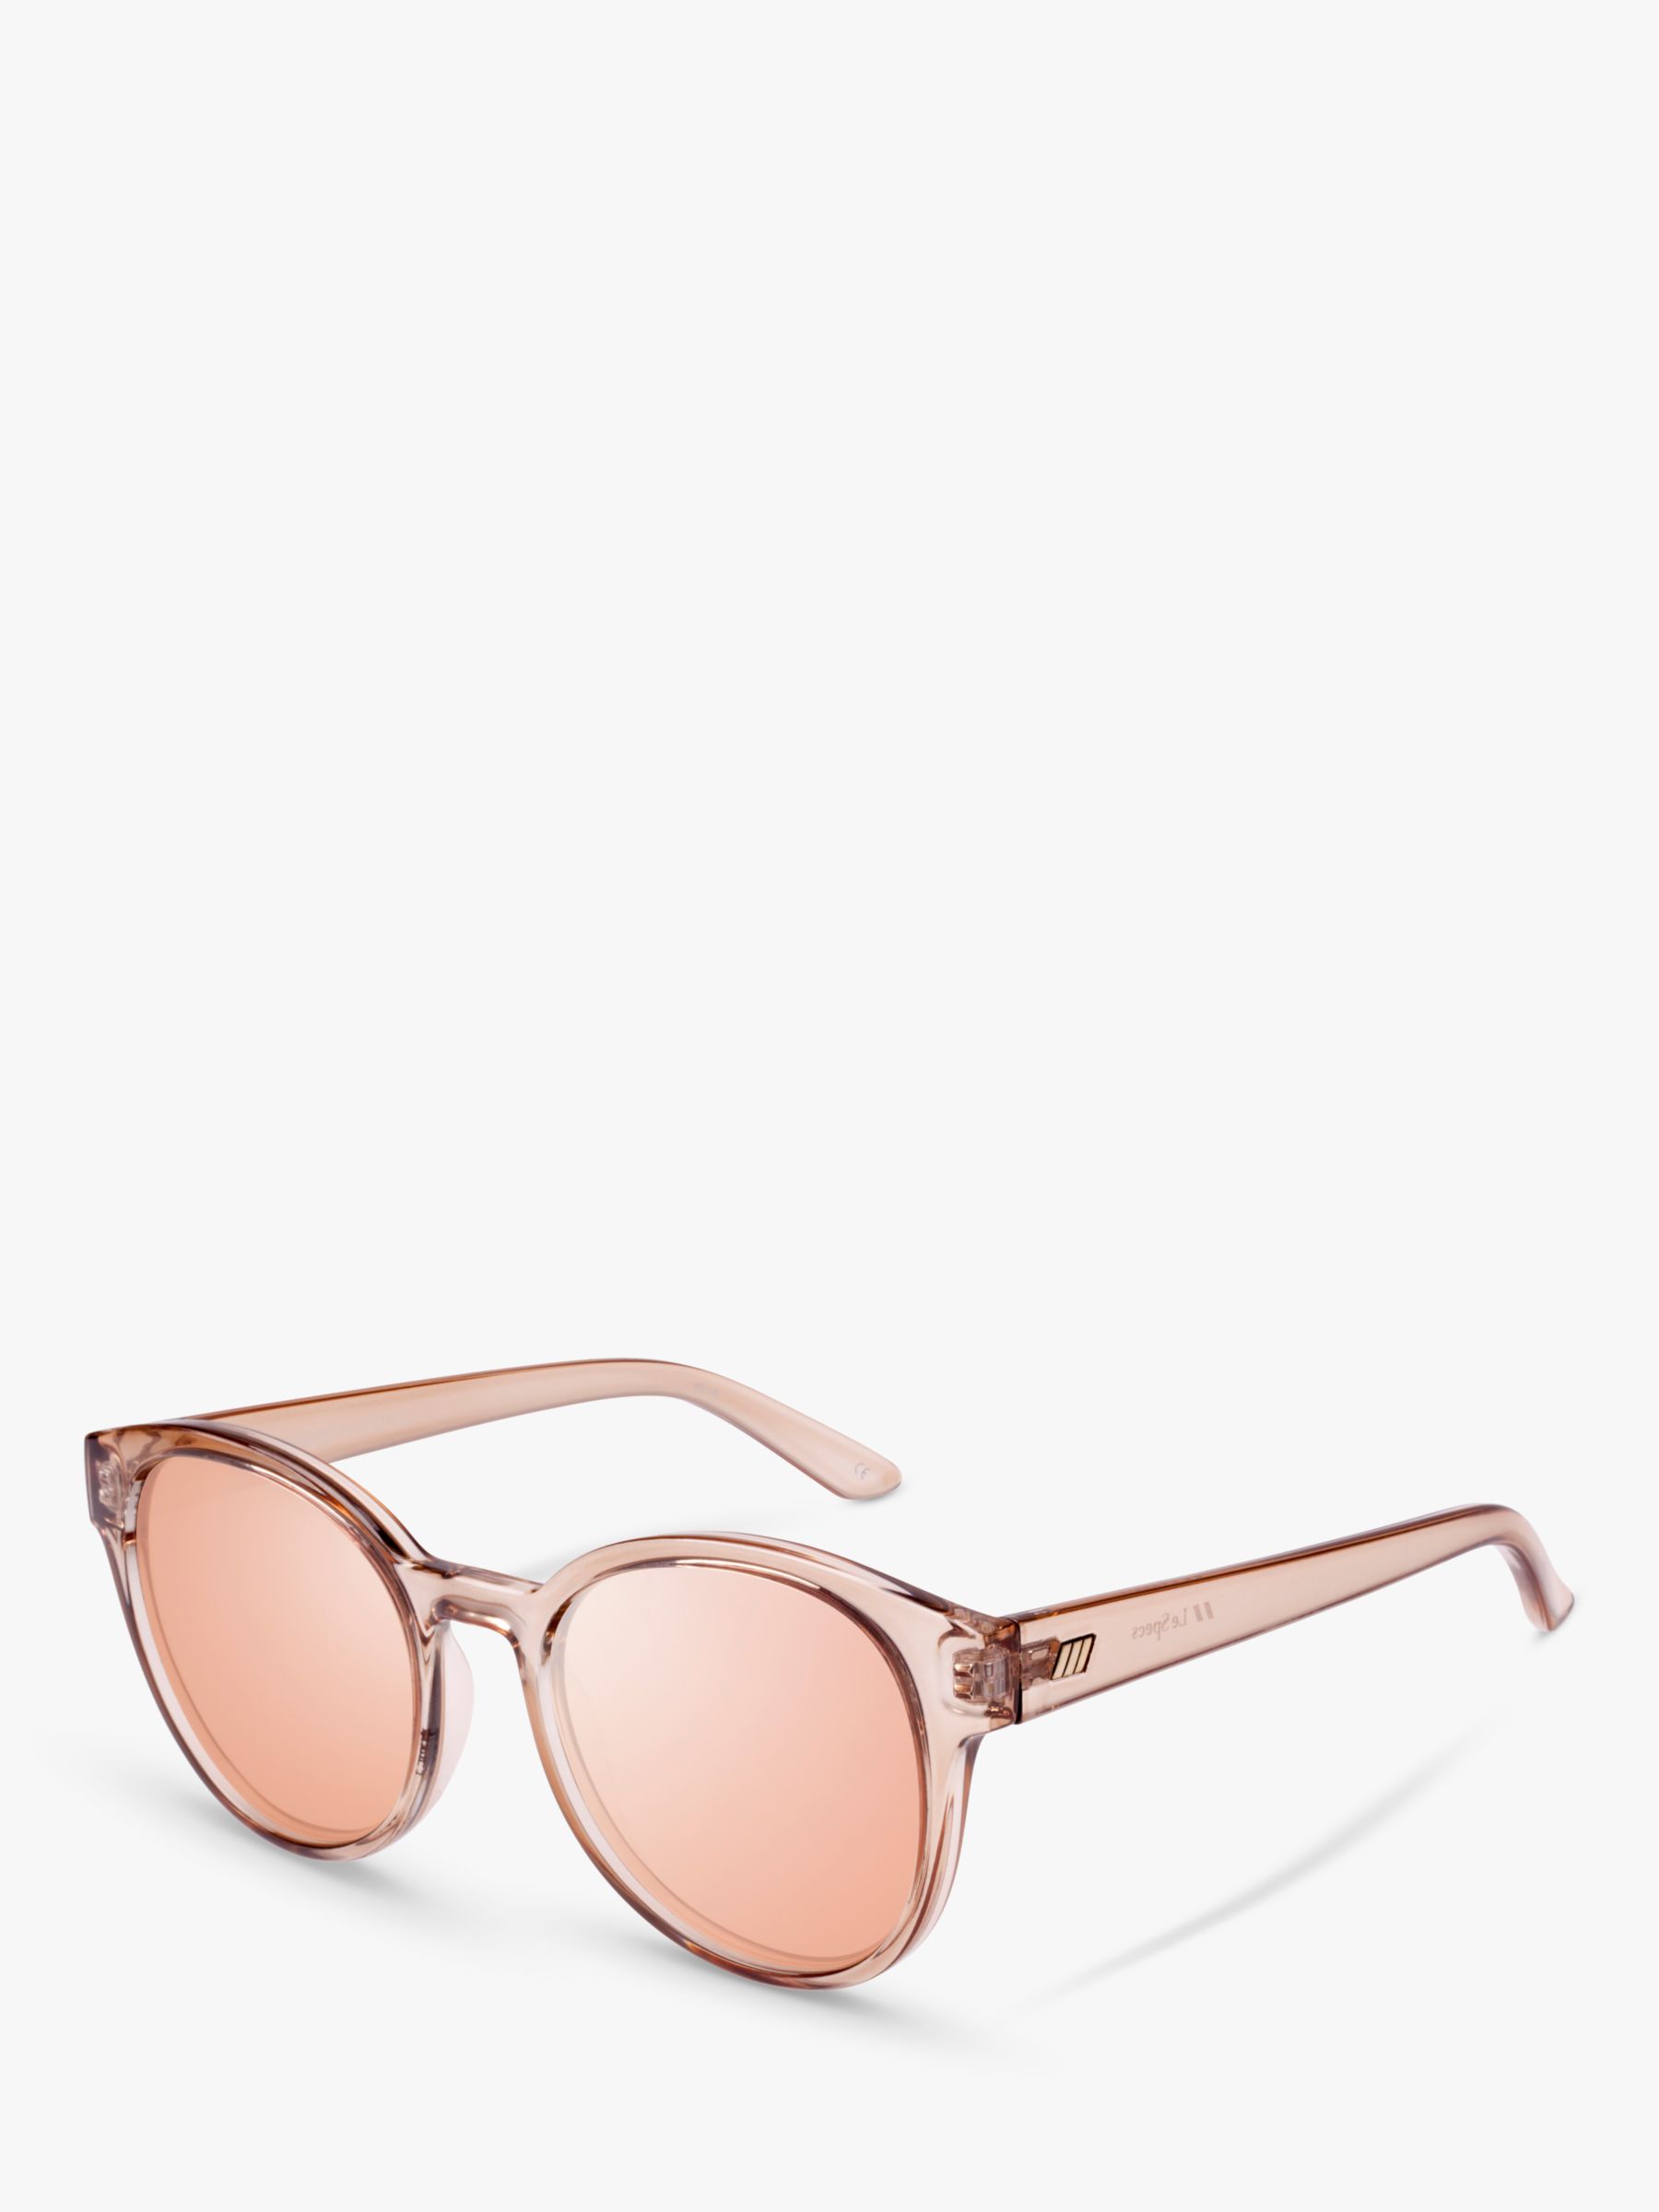 цена L5000149 Женские круглые солнцезащитные очки Paramount Le Specs, тан